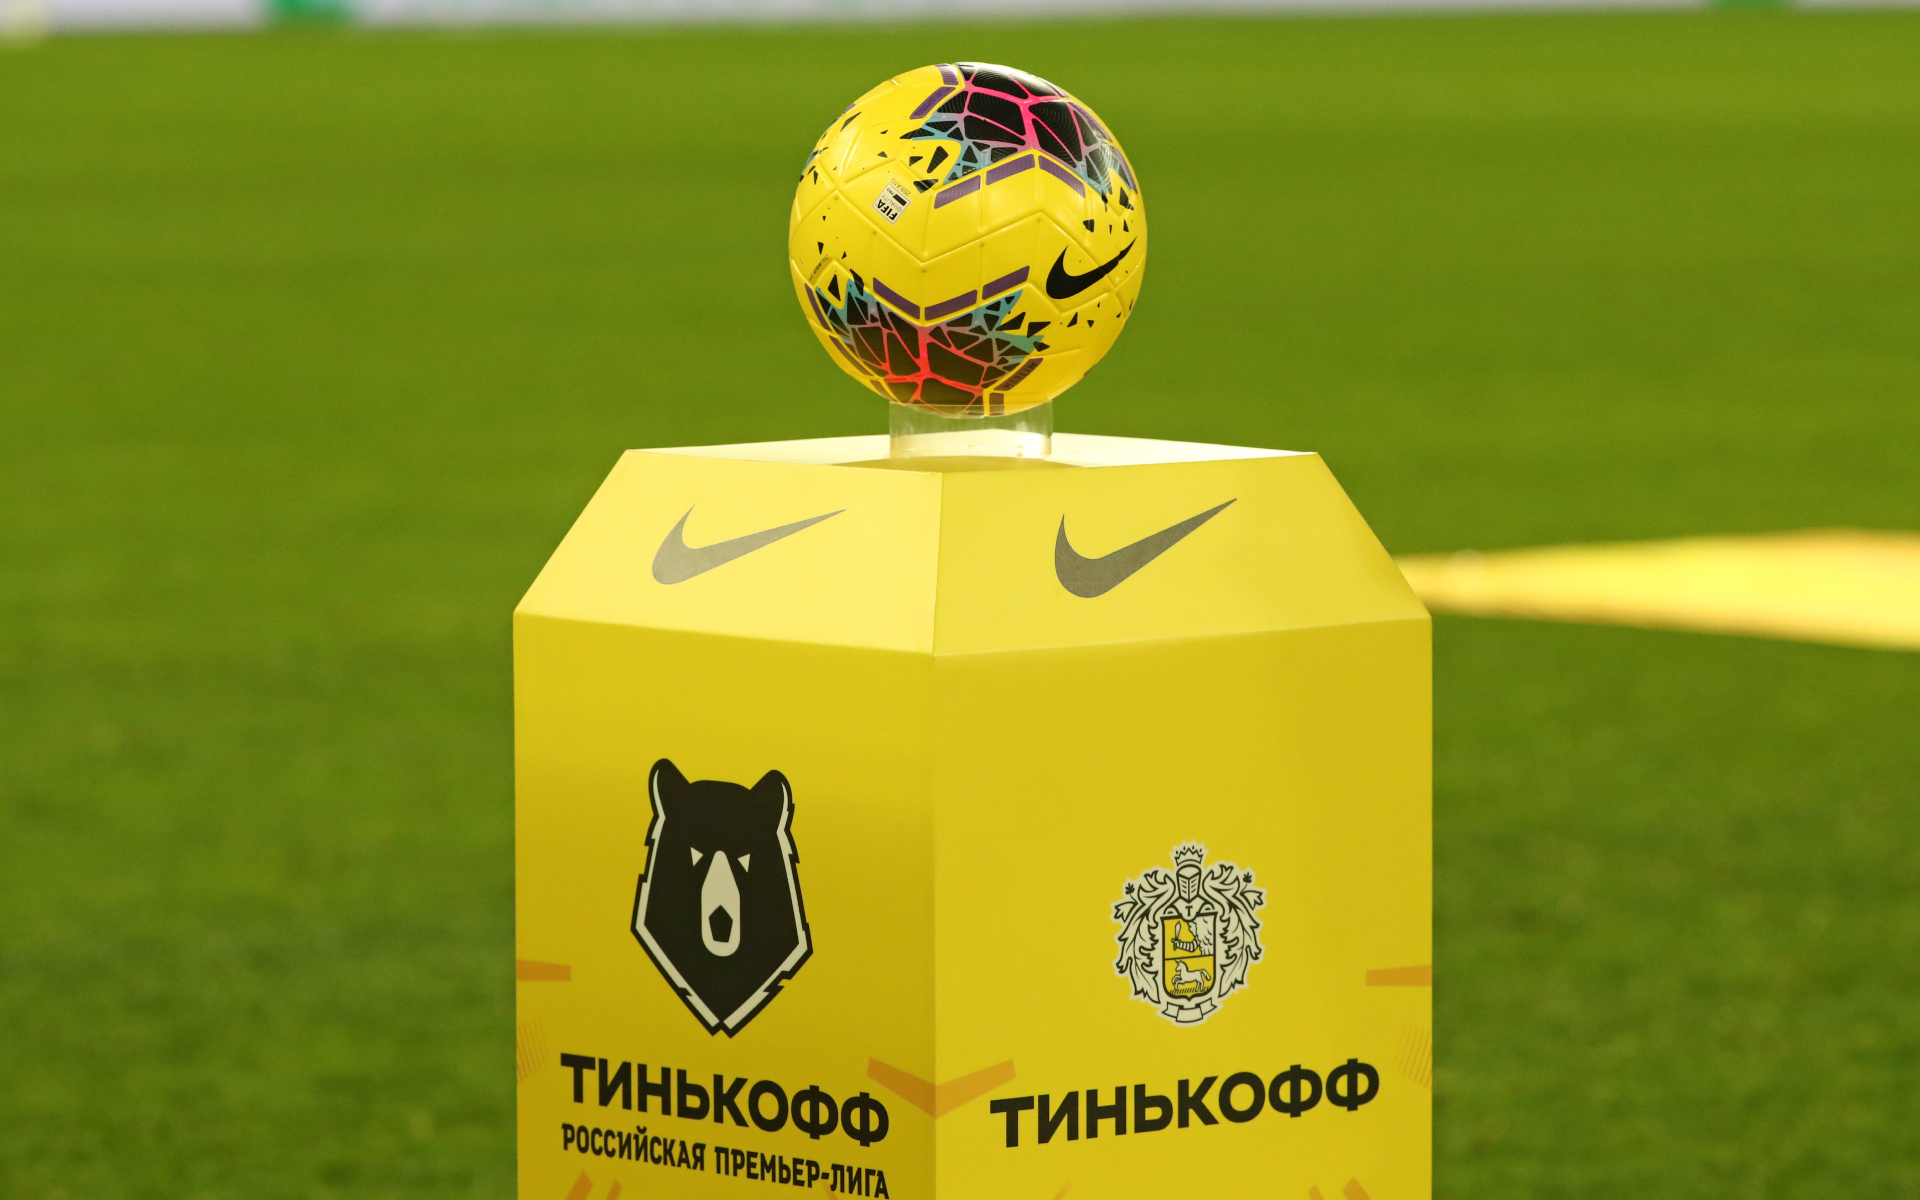 4 банка из топ-15 захотели получить название чемпионата России по футболу